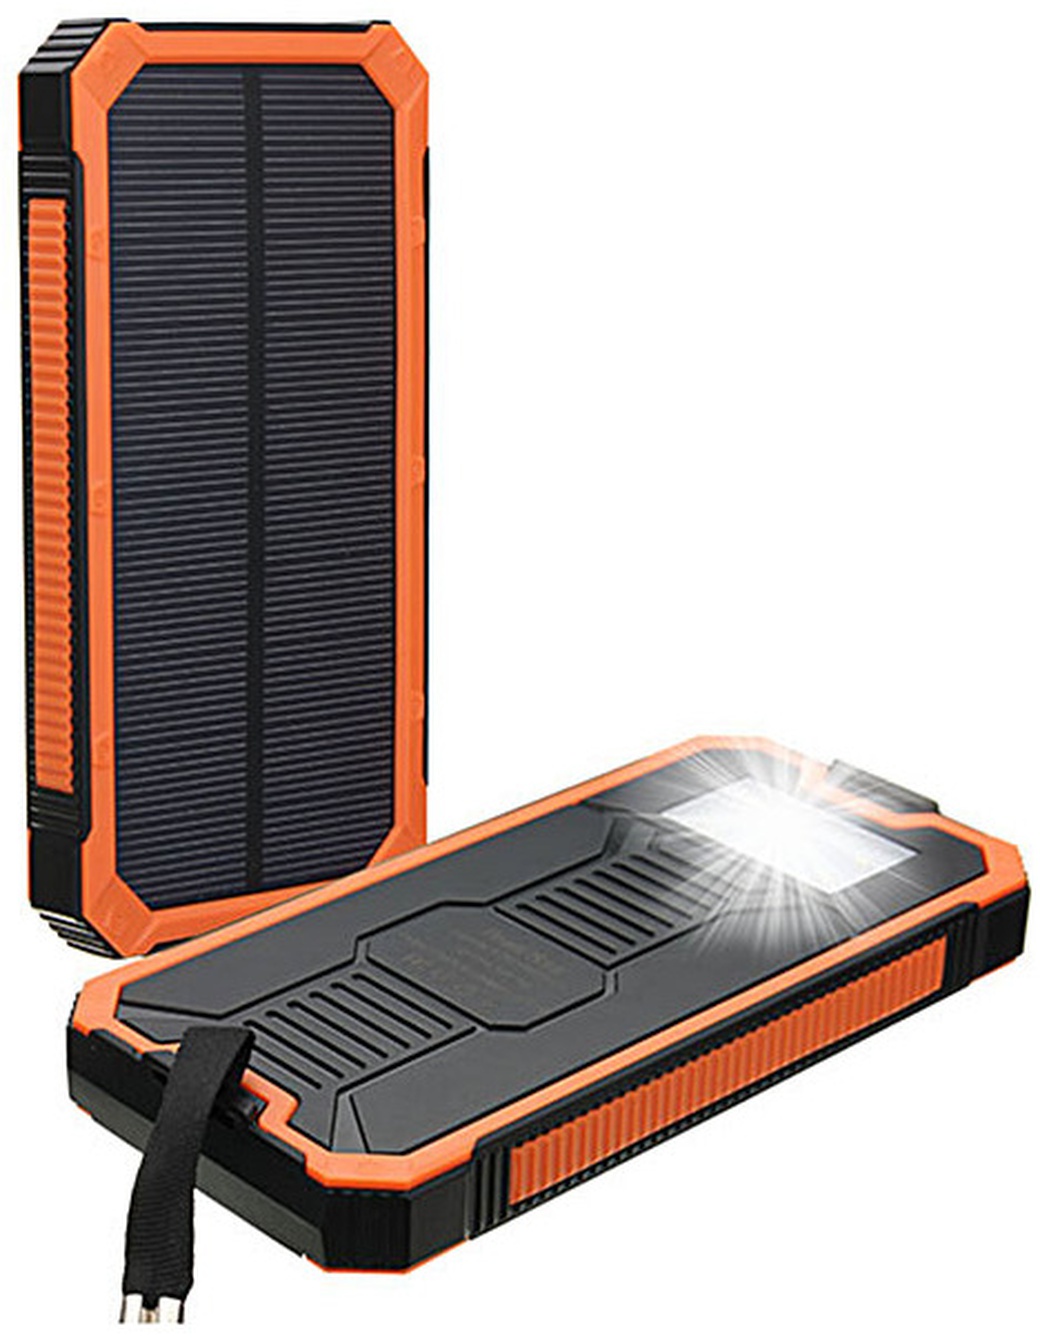 Внешний аккумулятор на солнечной батарее 8000mAh, водонепроницаемый, оранжевый фото